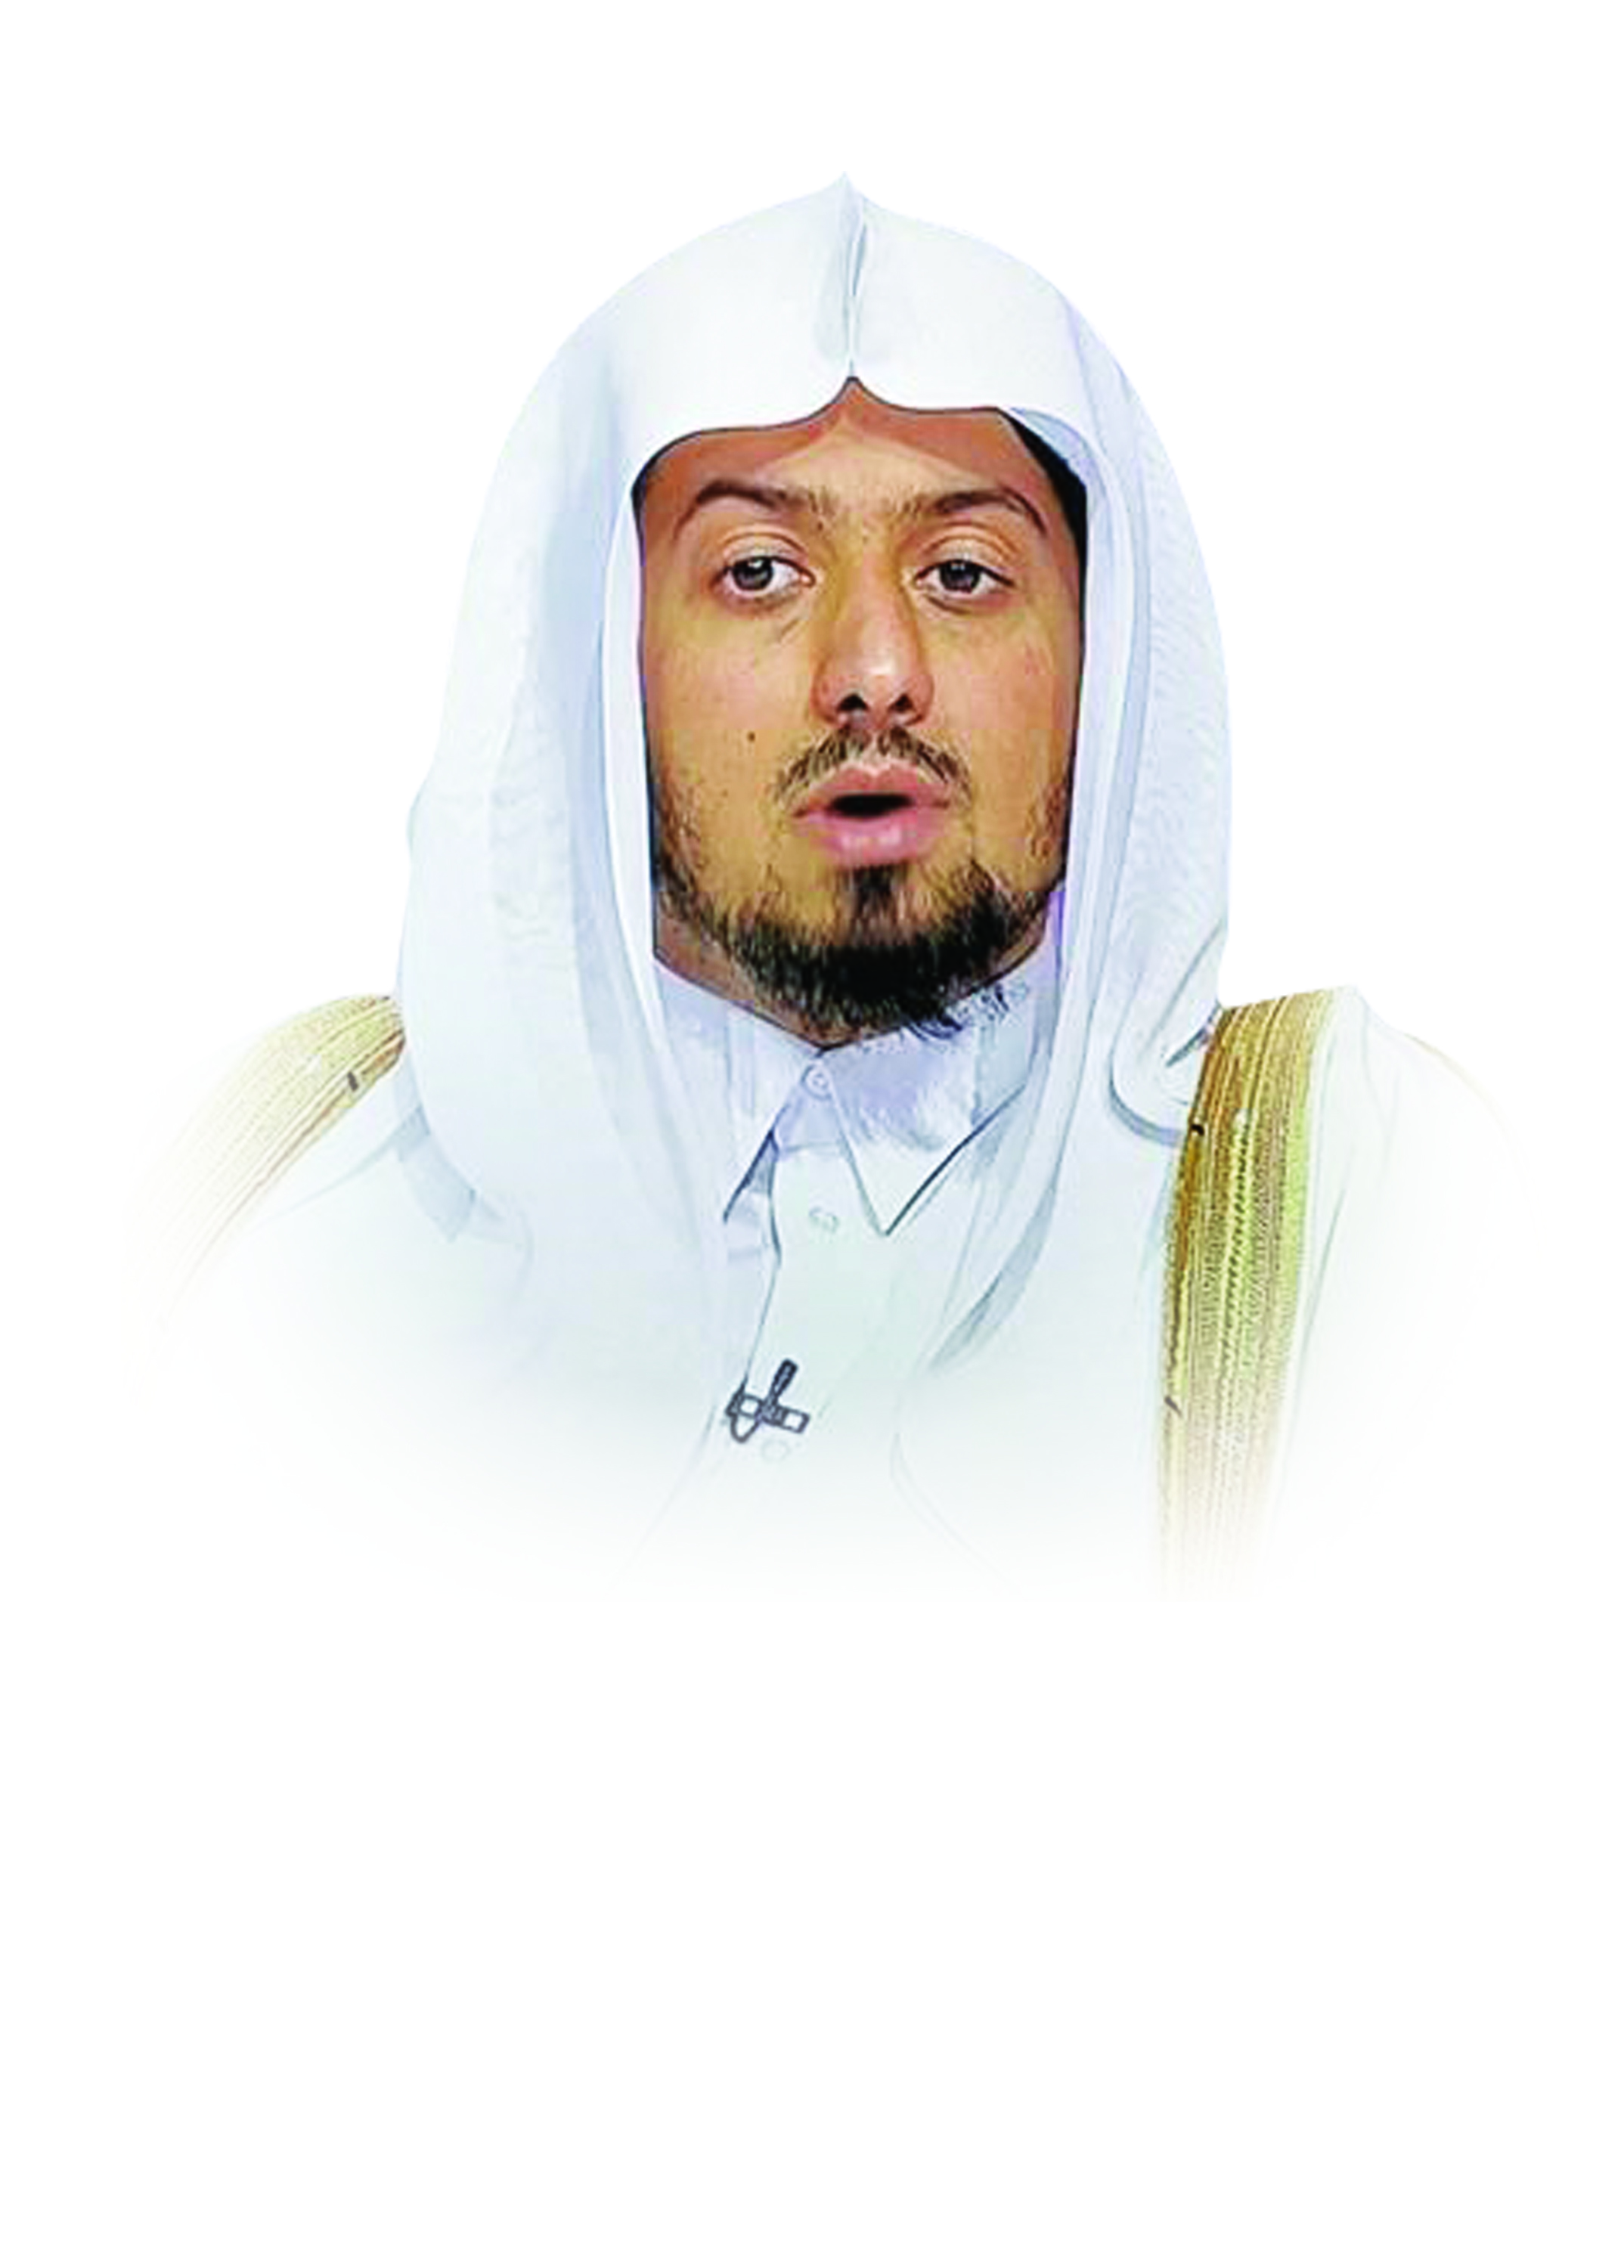 د. جاسم بن محمد الجابر